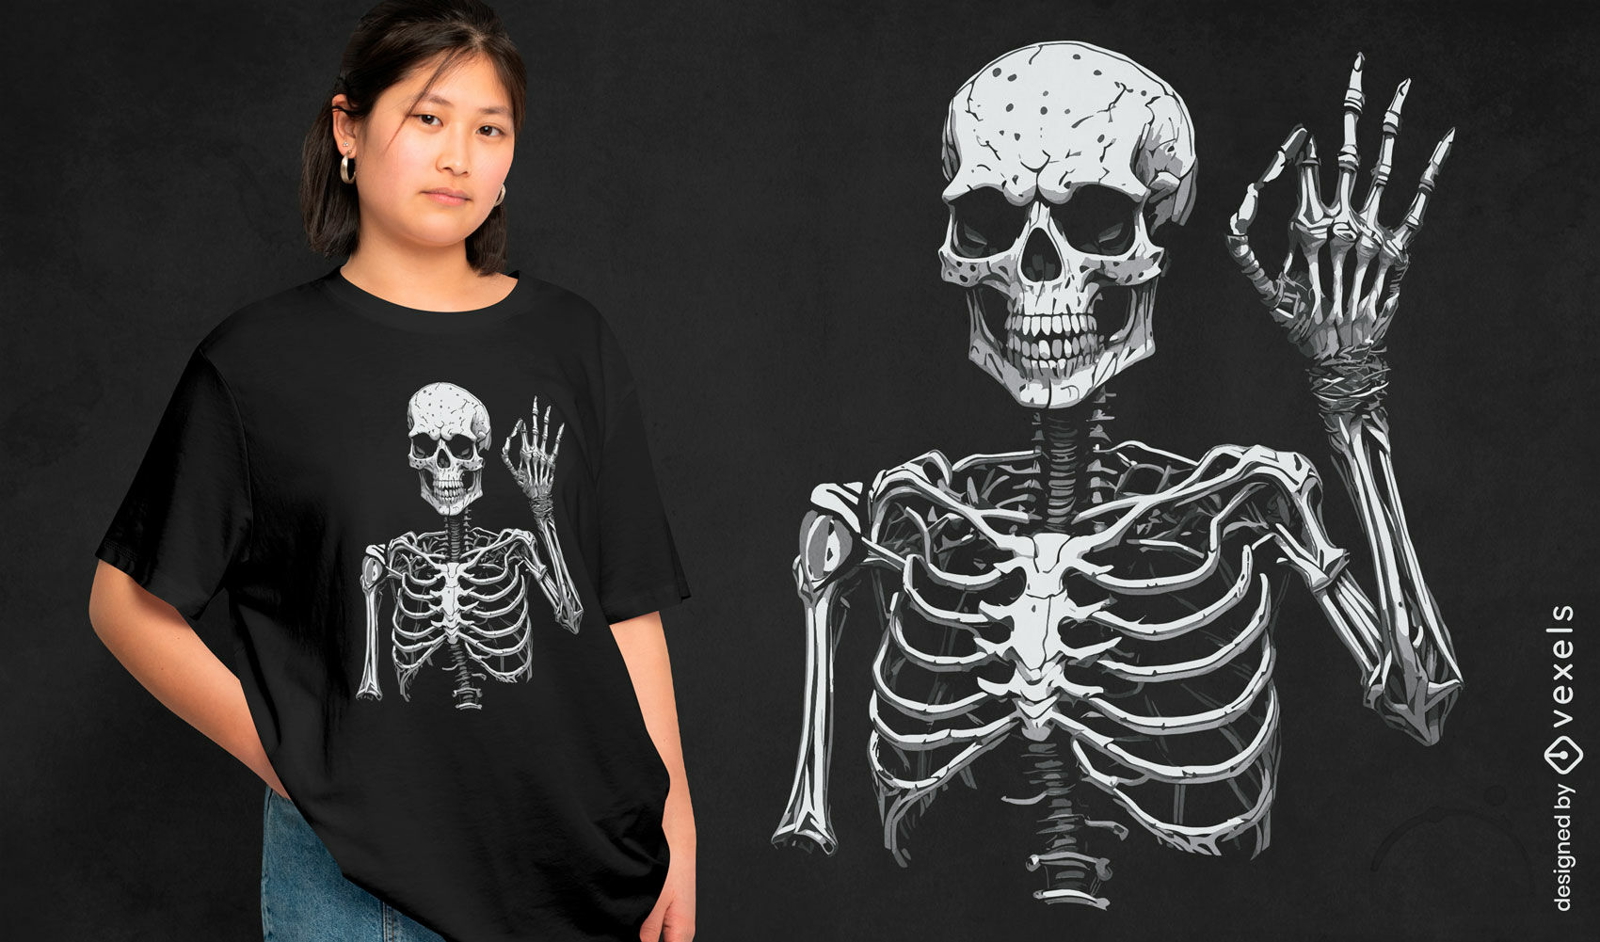 Esqueleto haciendo diseño de camiseta con el signo Ok.